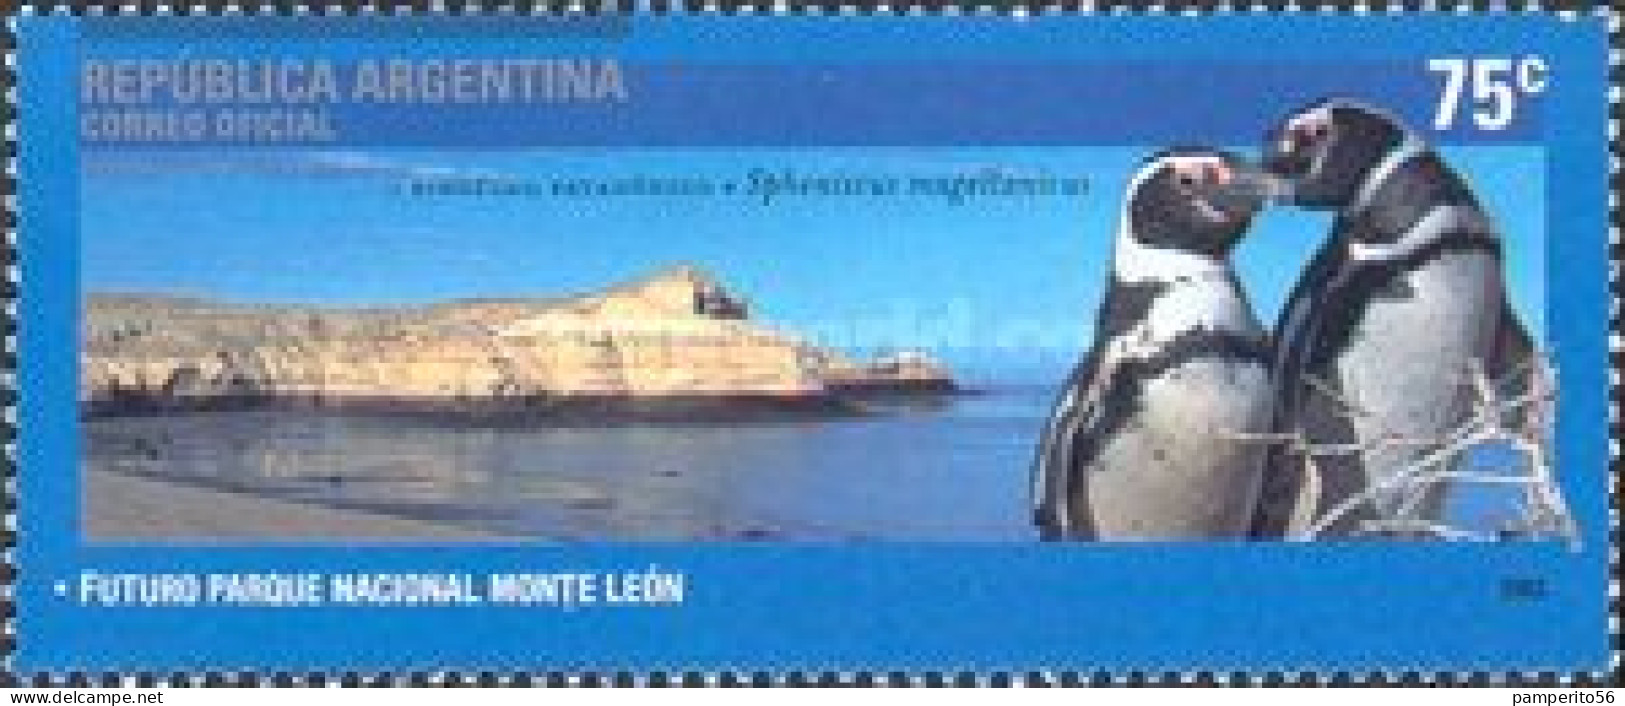 ARGENTINA - AÑO 2003 - Parques Nacionales, Parque Nacional Monte León, Pinguino Patagónico - Usada - Usados